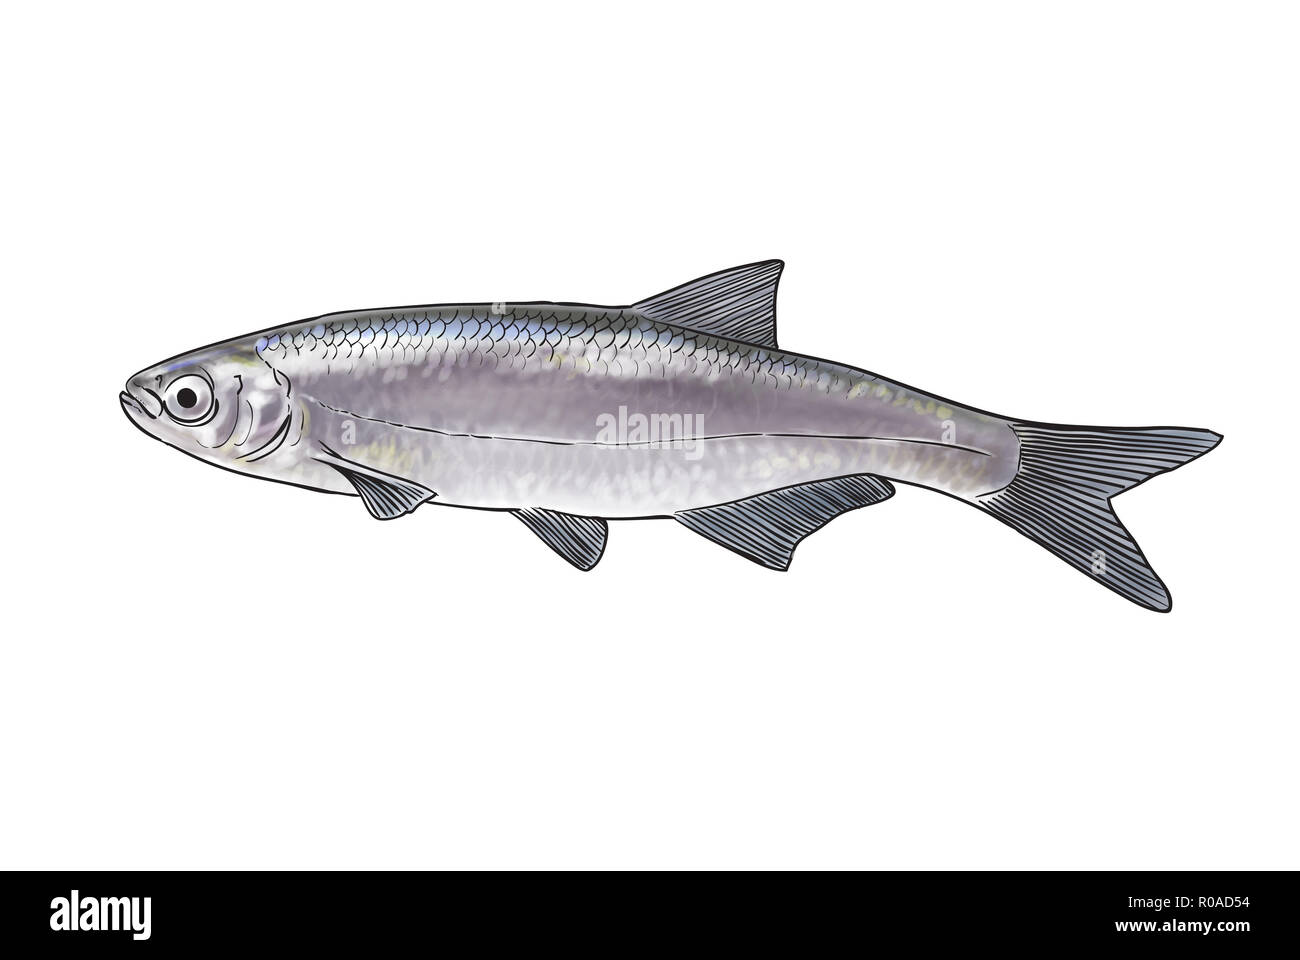 Digital illustration of freshwater fish, bleak Stock Photo